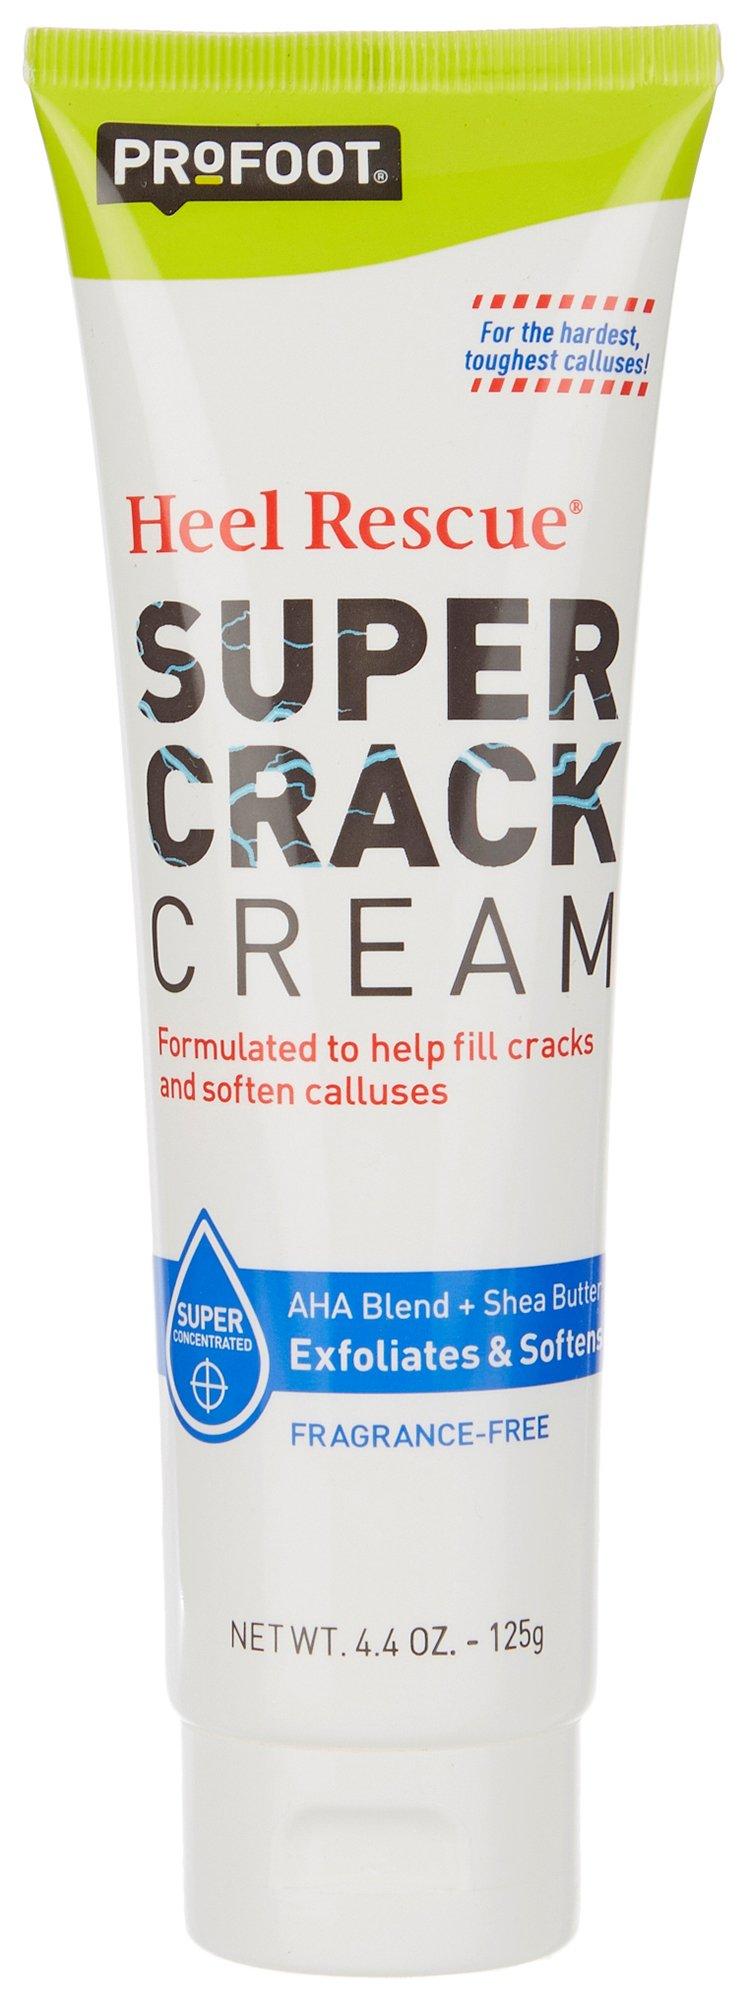 Heel Rescue Super Crack Foot Cream